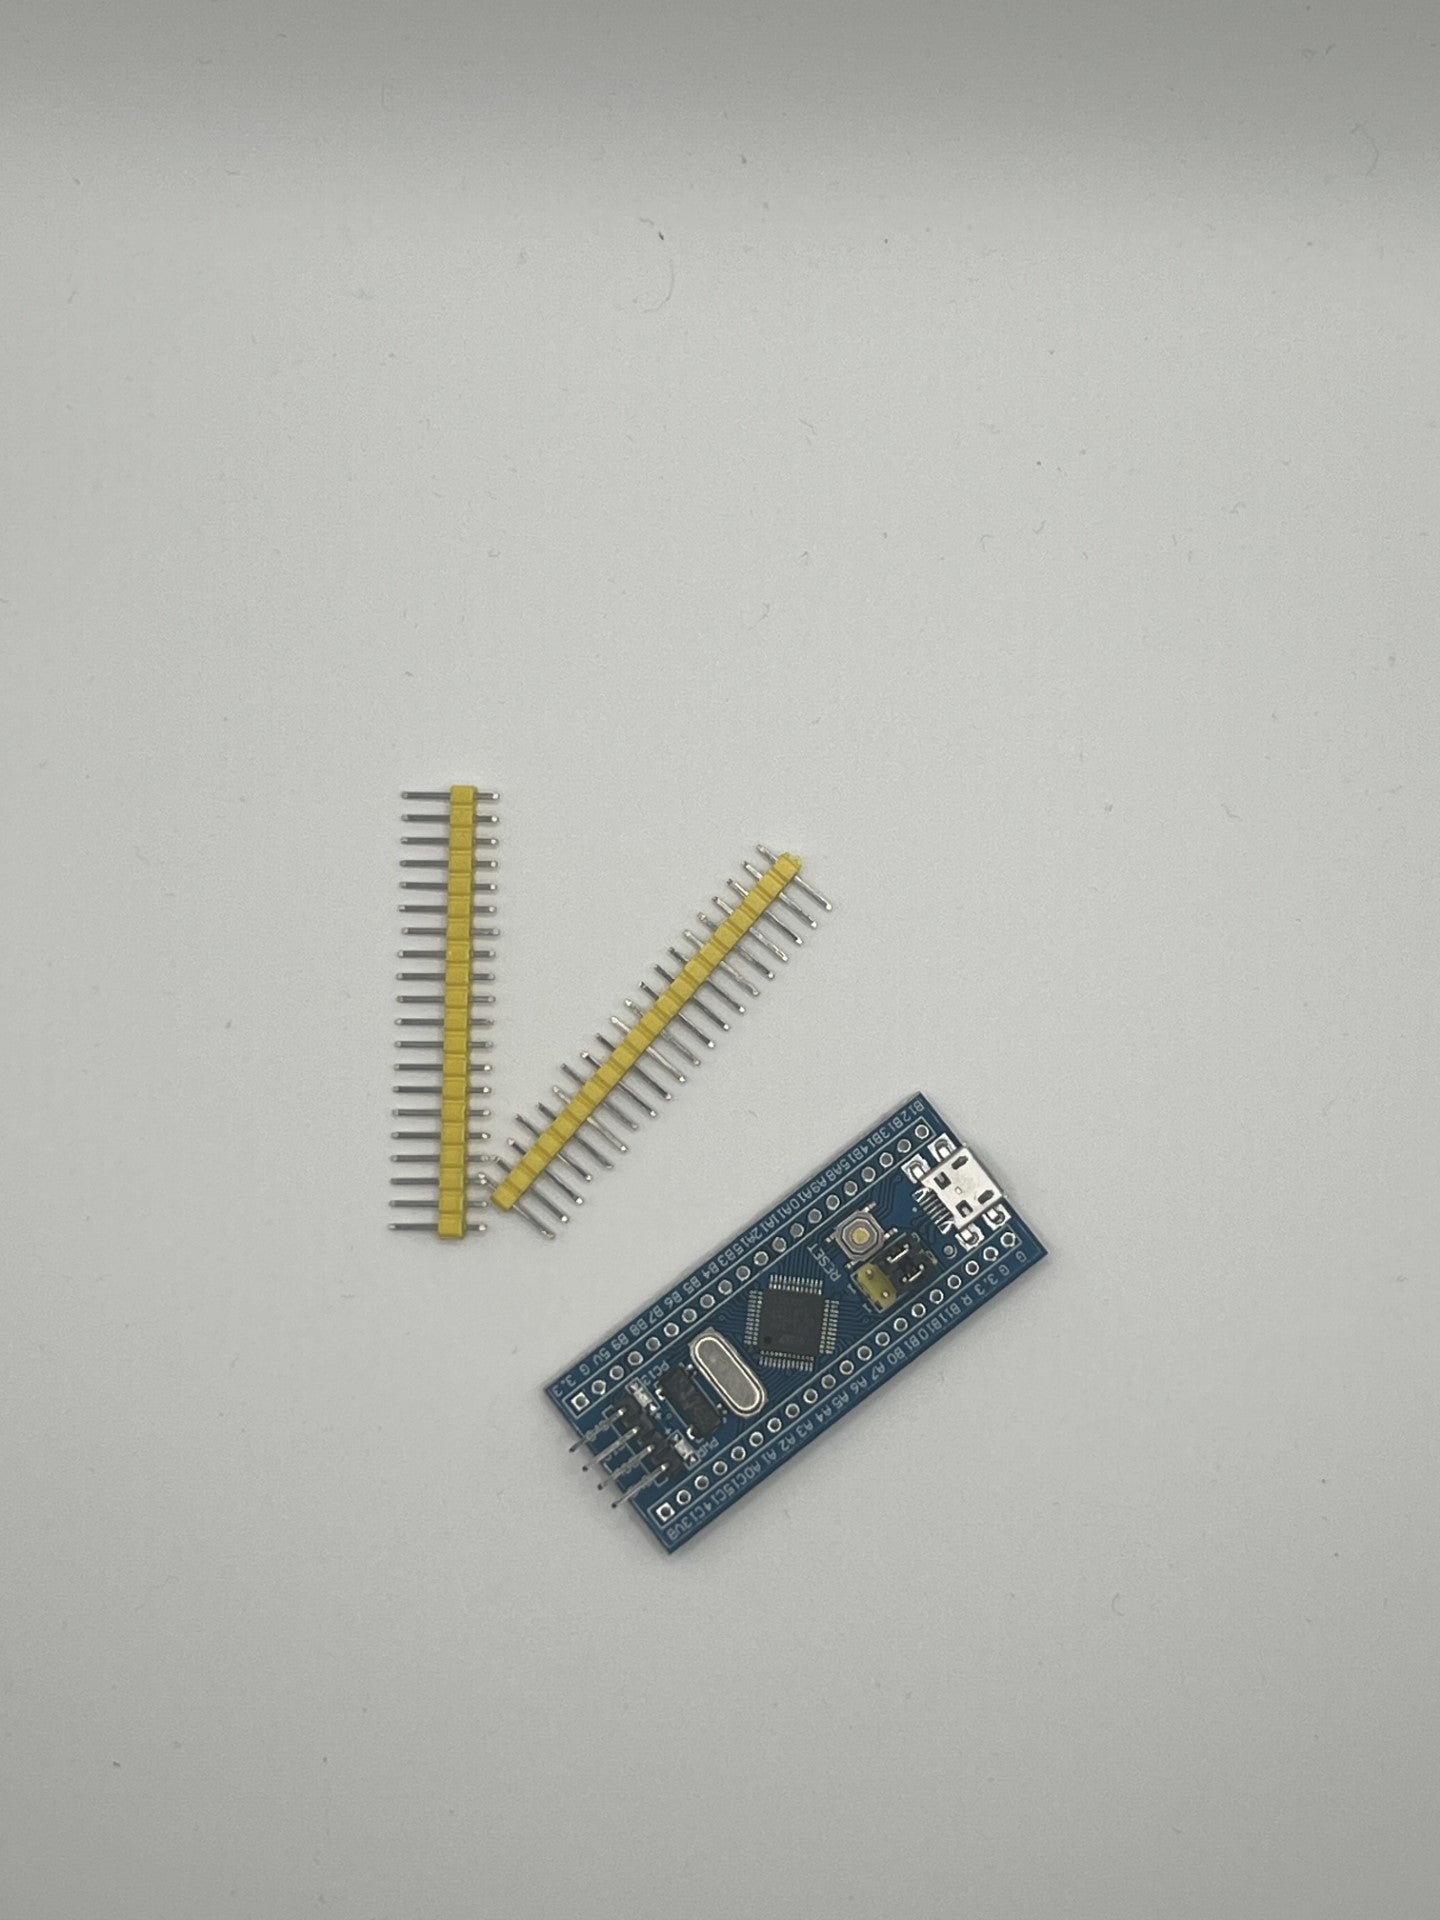 Bluepill Minimum Micro USB System Development Board with pins